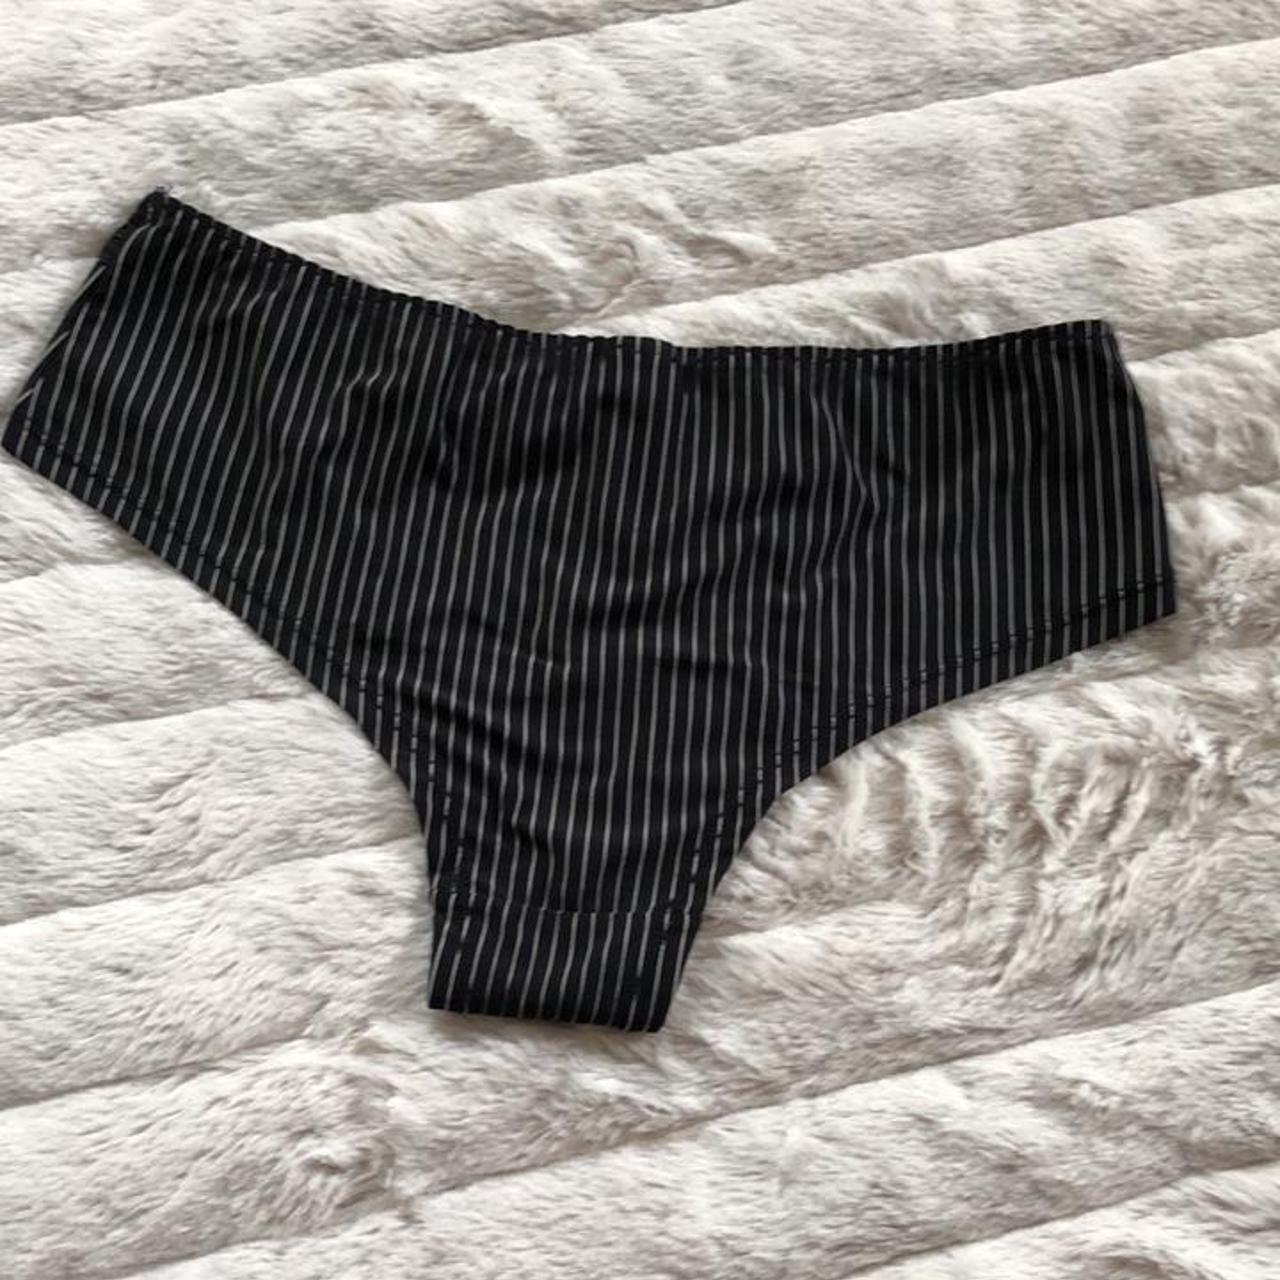 Product Image 2 - Pimkie #Y2K tuxedo panties

Super cute